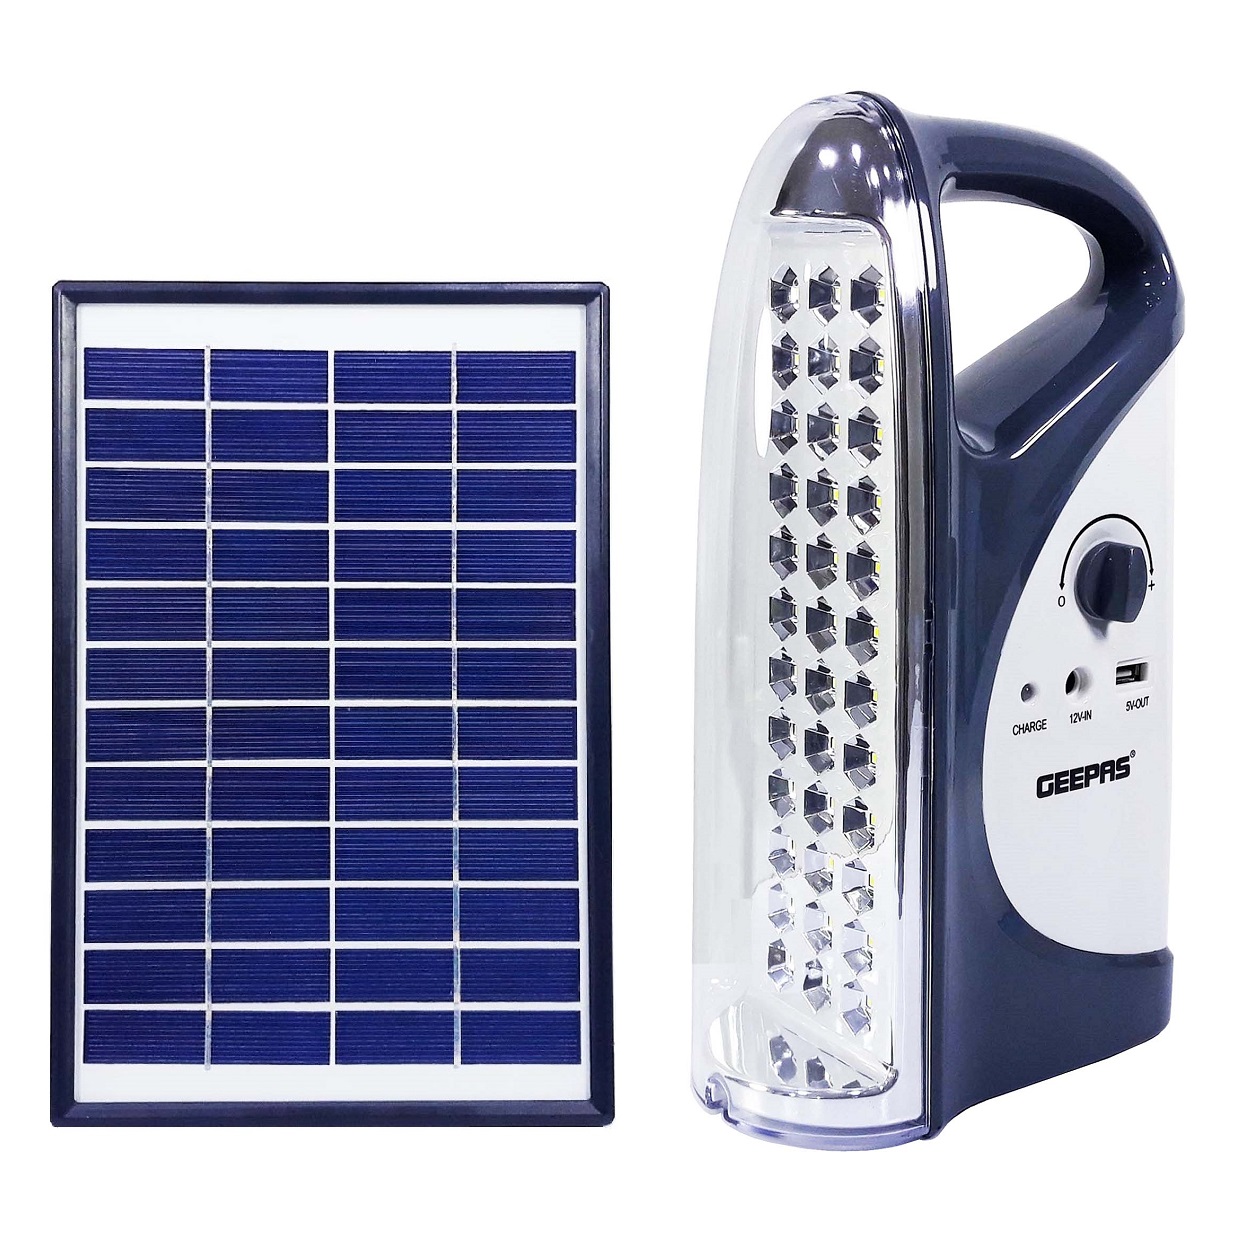  سیستم روشنایی خورشیدی جی پاس مدل GSE5583 کد K11